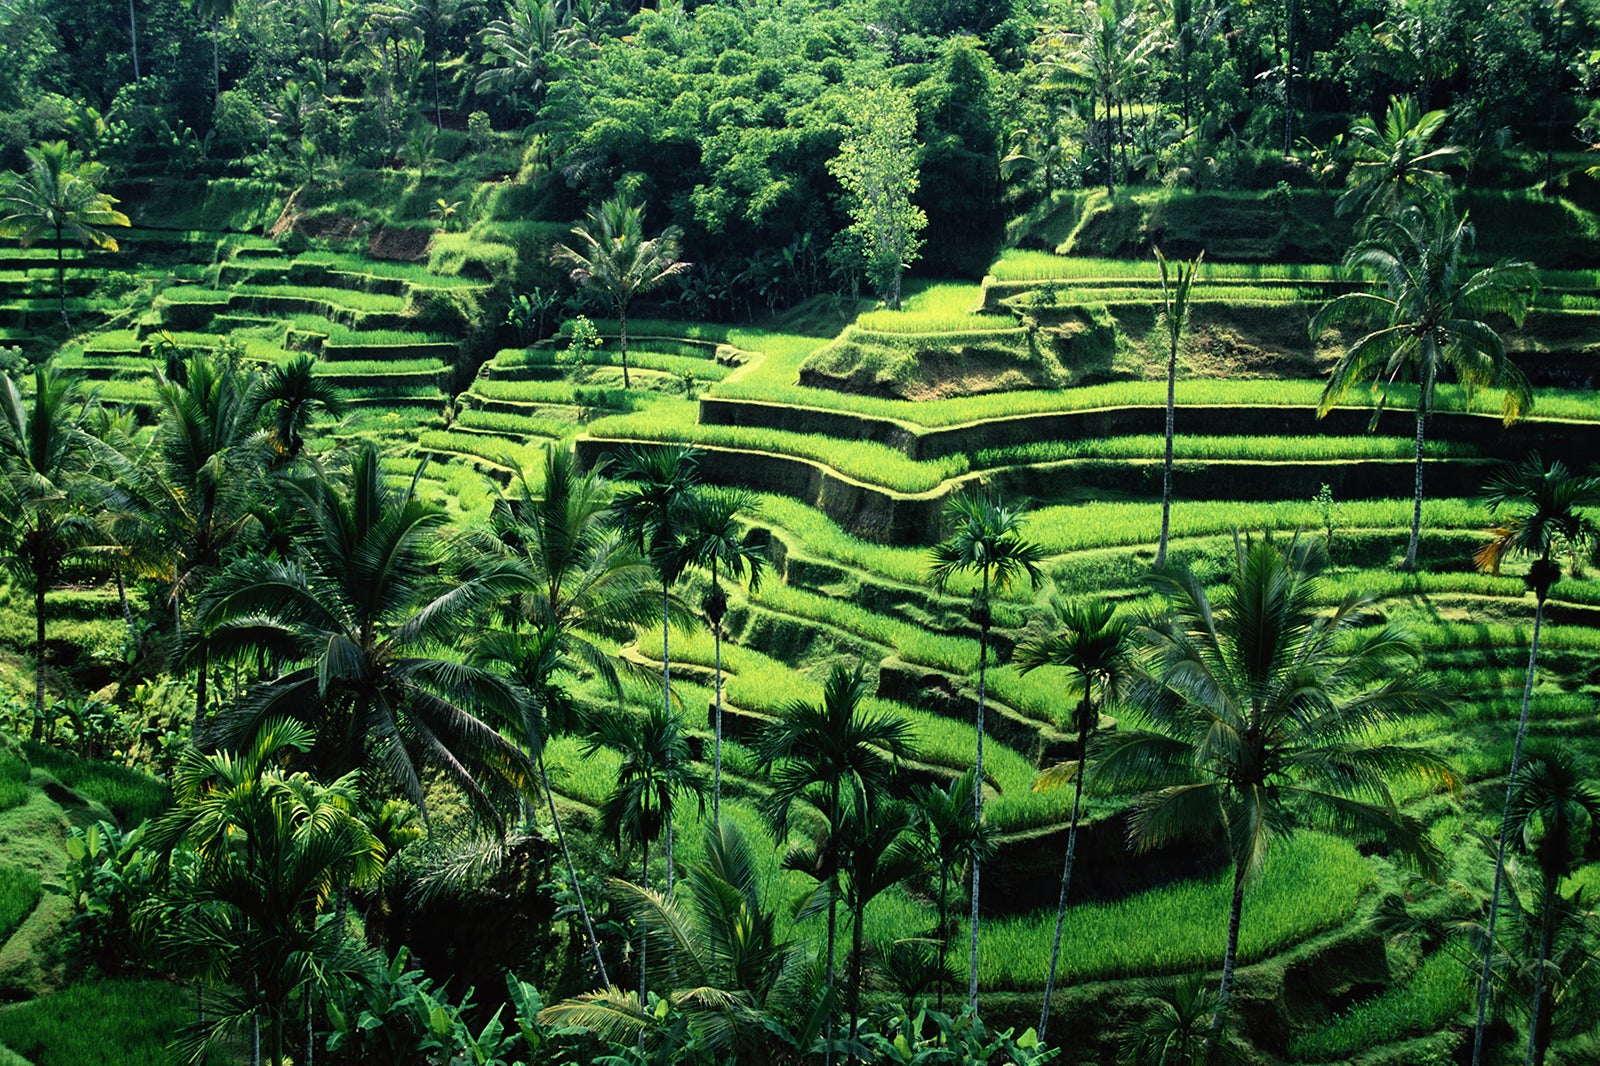 Рисовые террасы Банауэ Филиппины